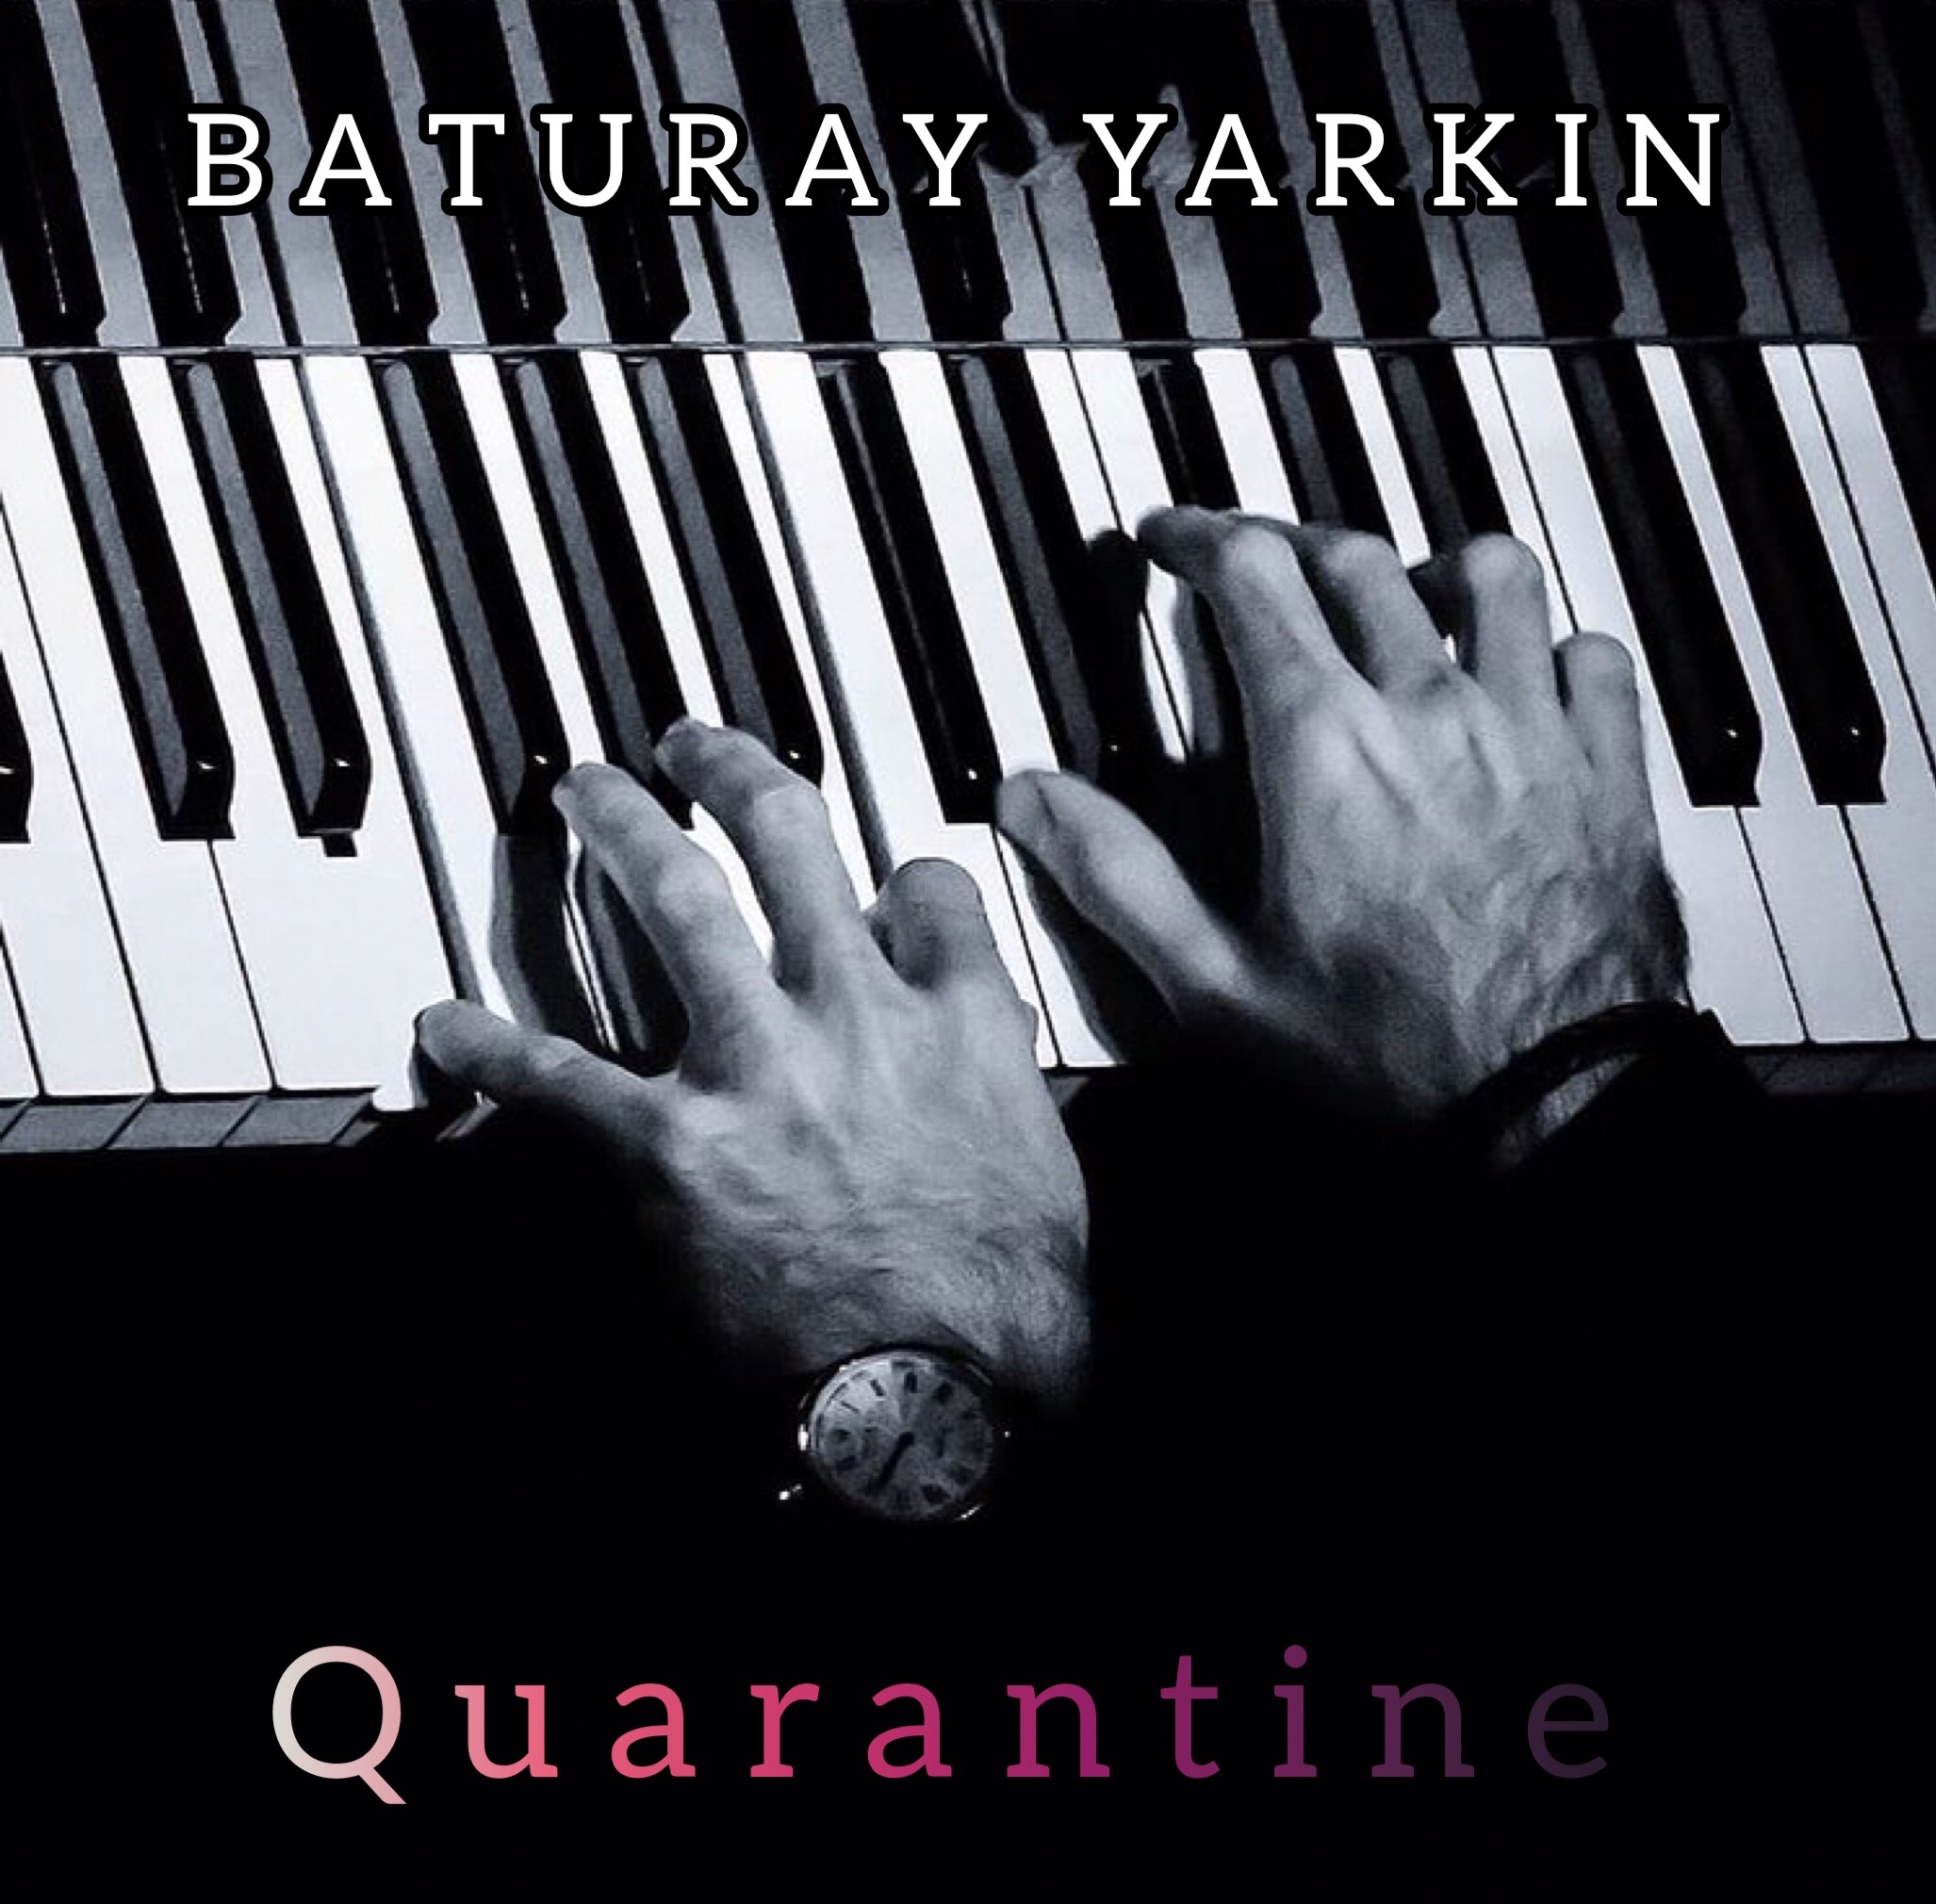 Baturay Yarkın – Quarantine (2021)